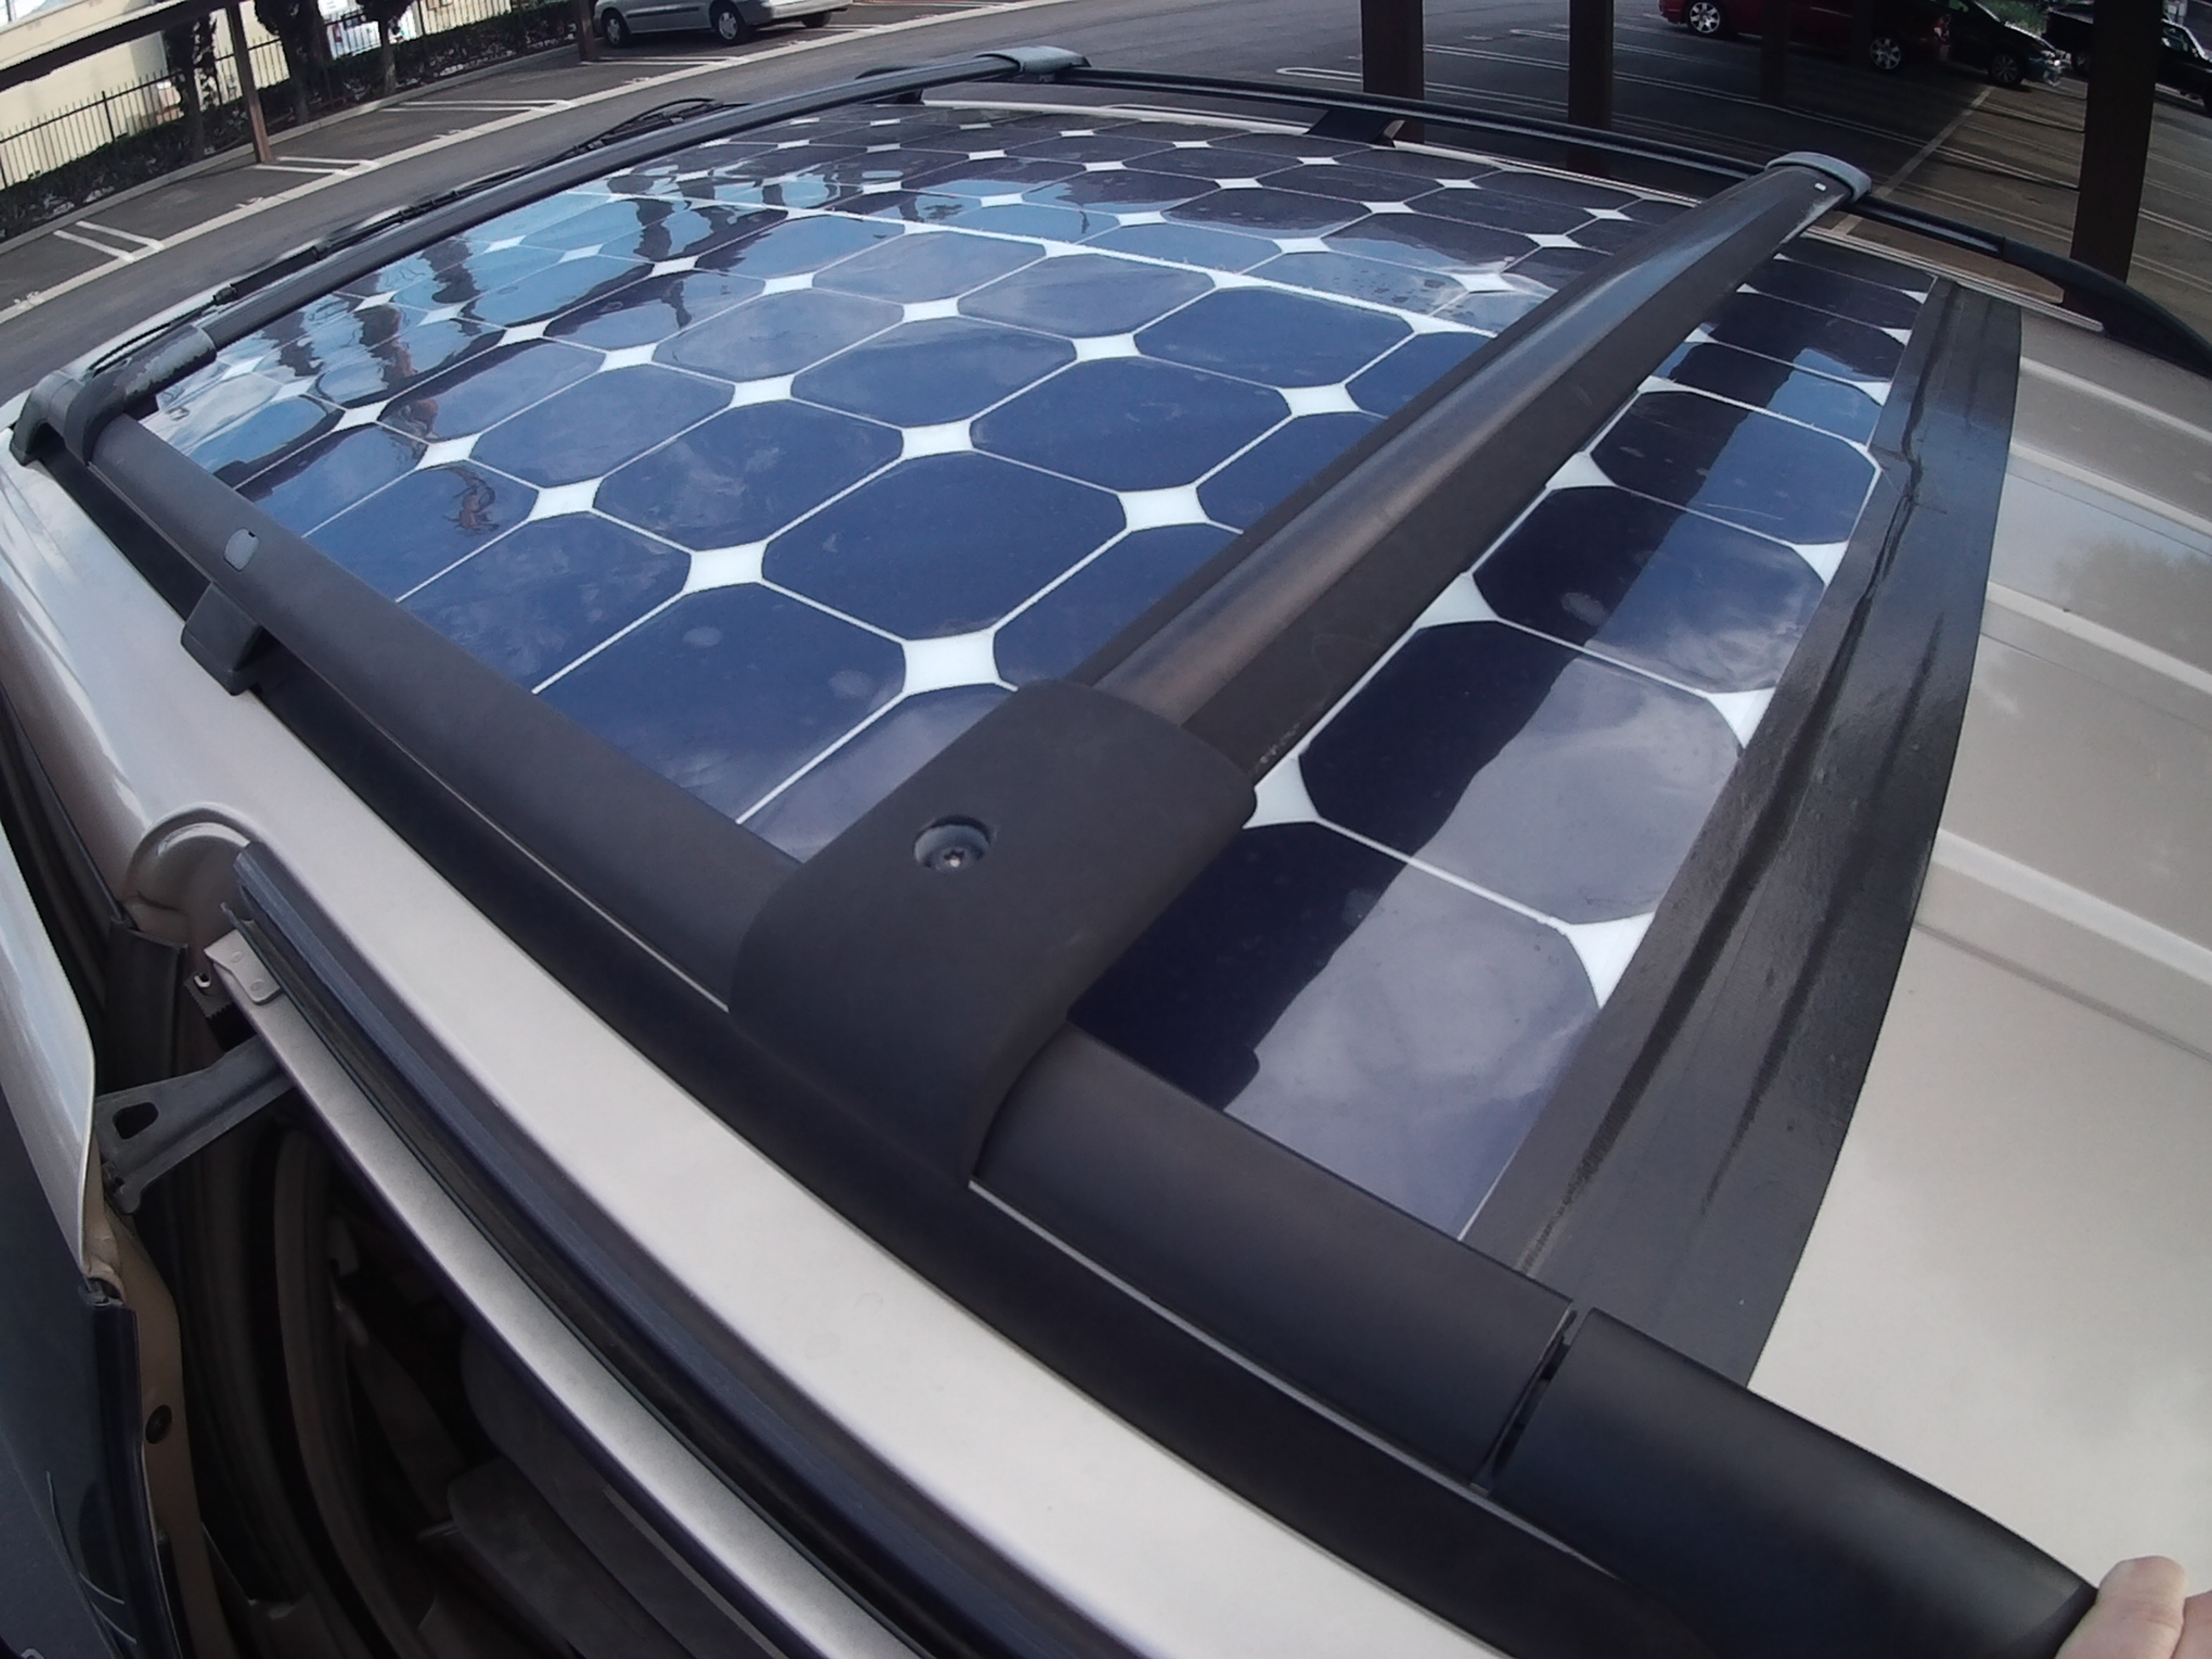 Installing Solar Panels On Honda Van